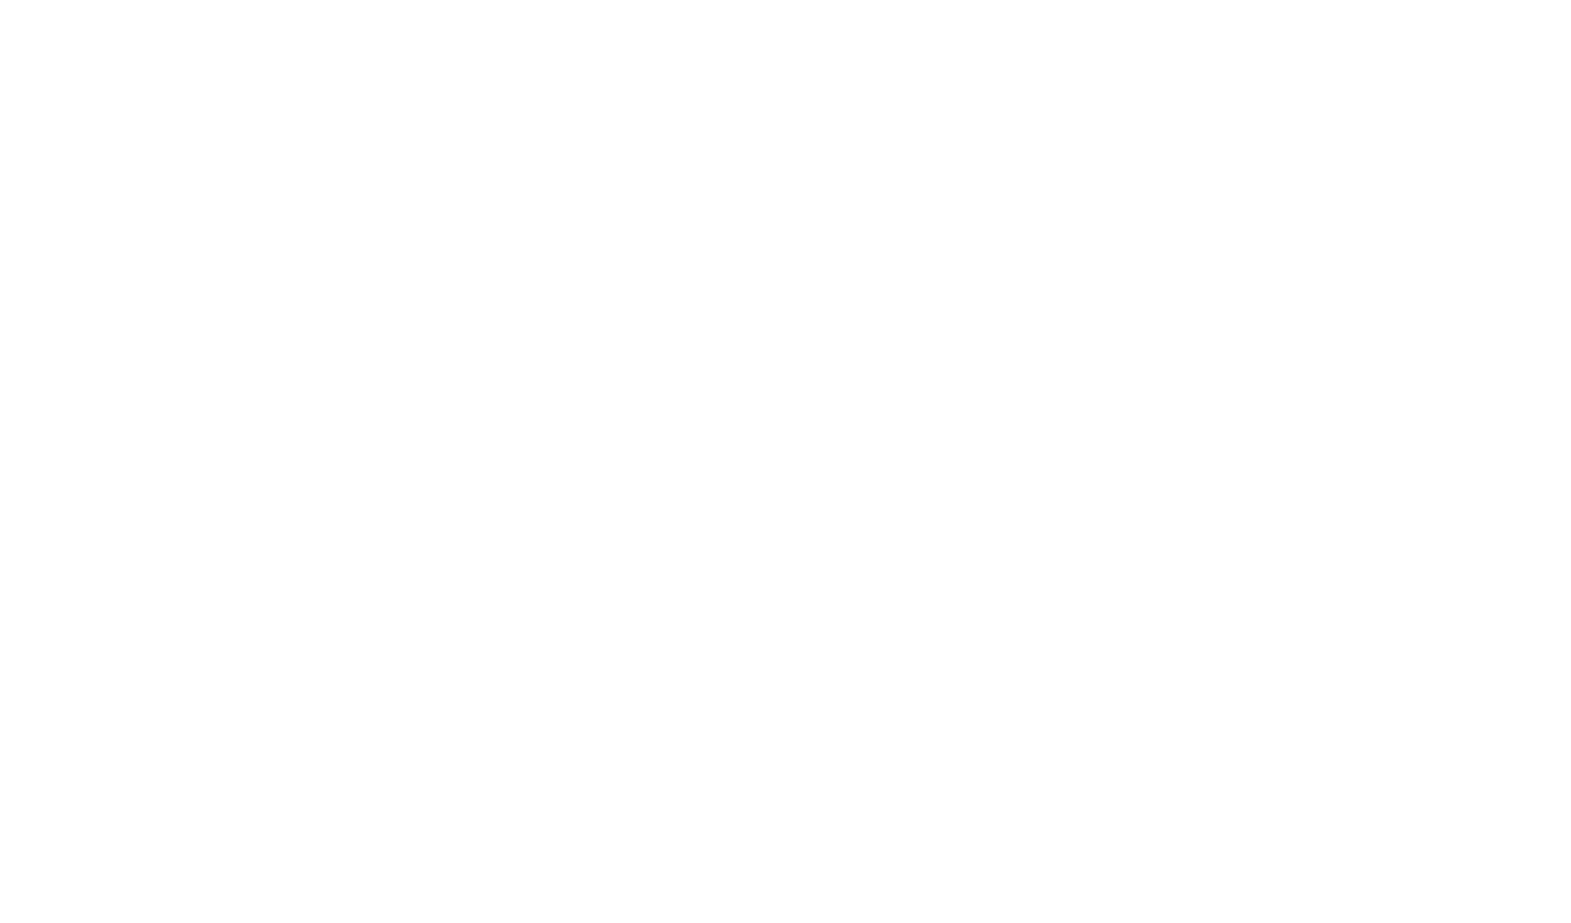 The Grane Ledger